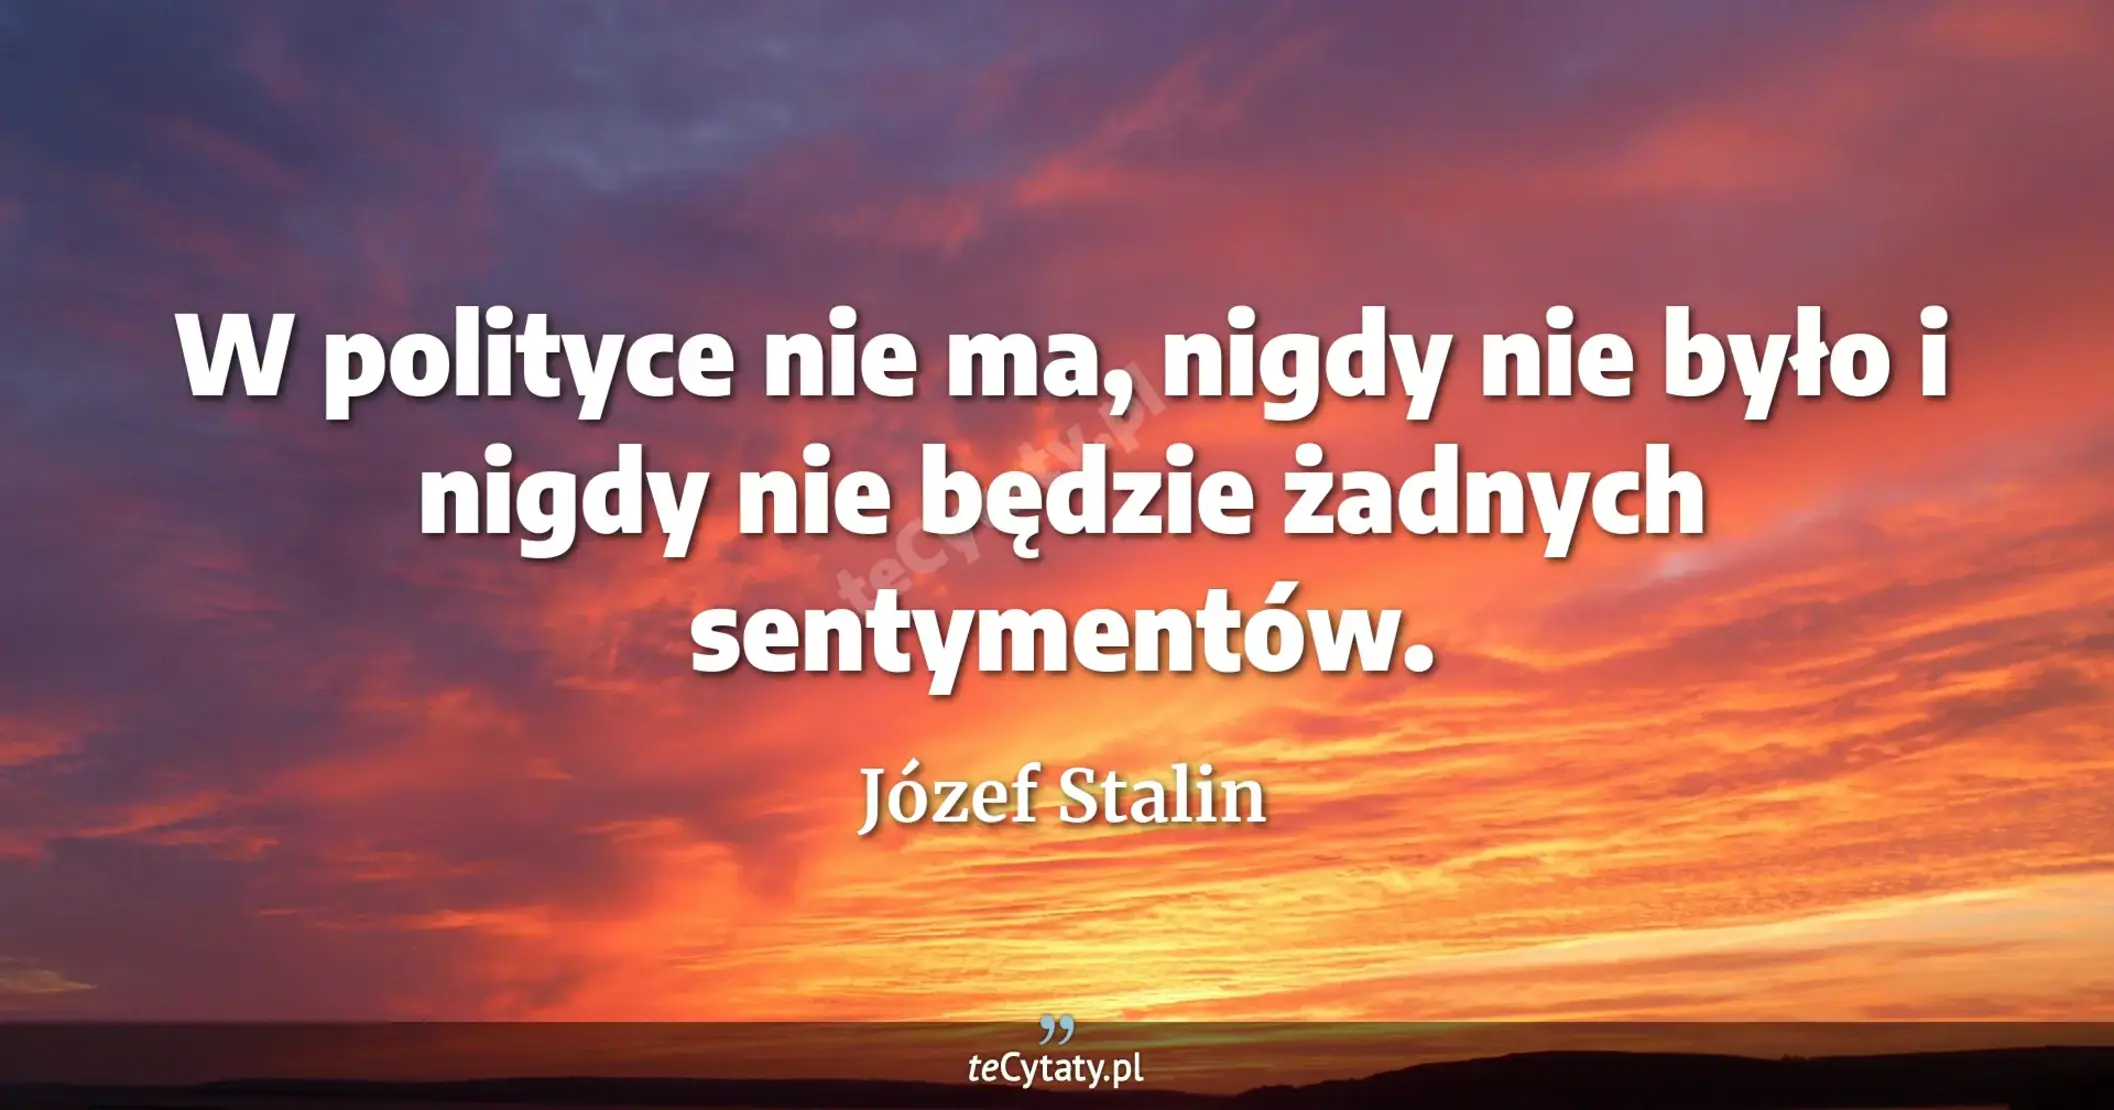 W polityce nie ma, nigdy nie było i nigdy nie będzie żadnych sentymentów. - Józef Stalin